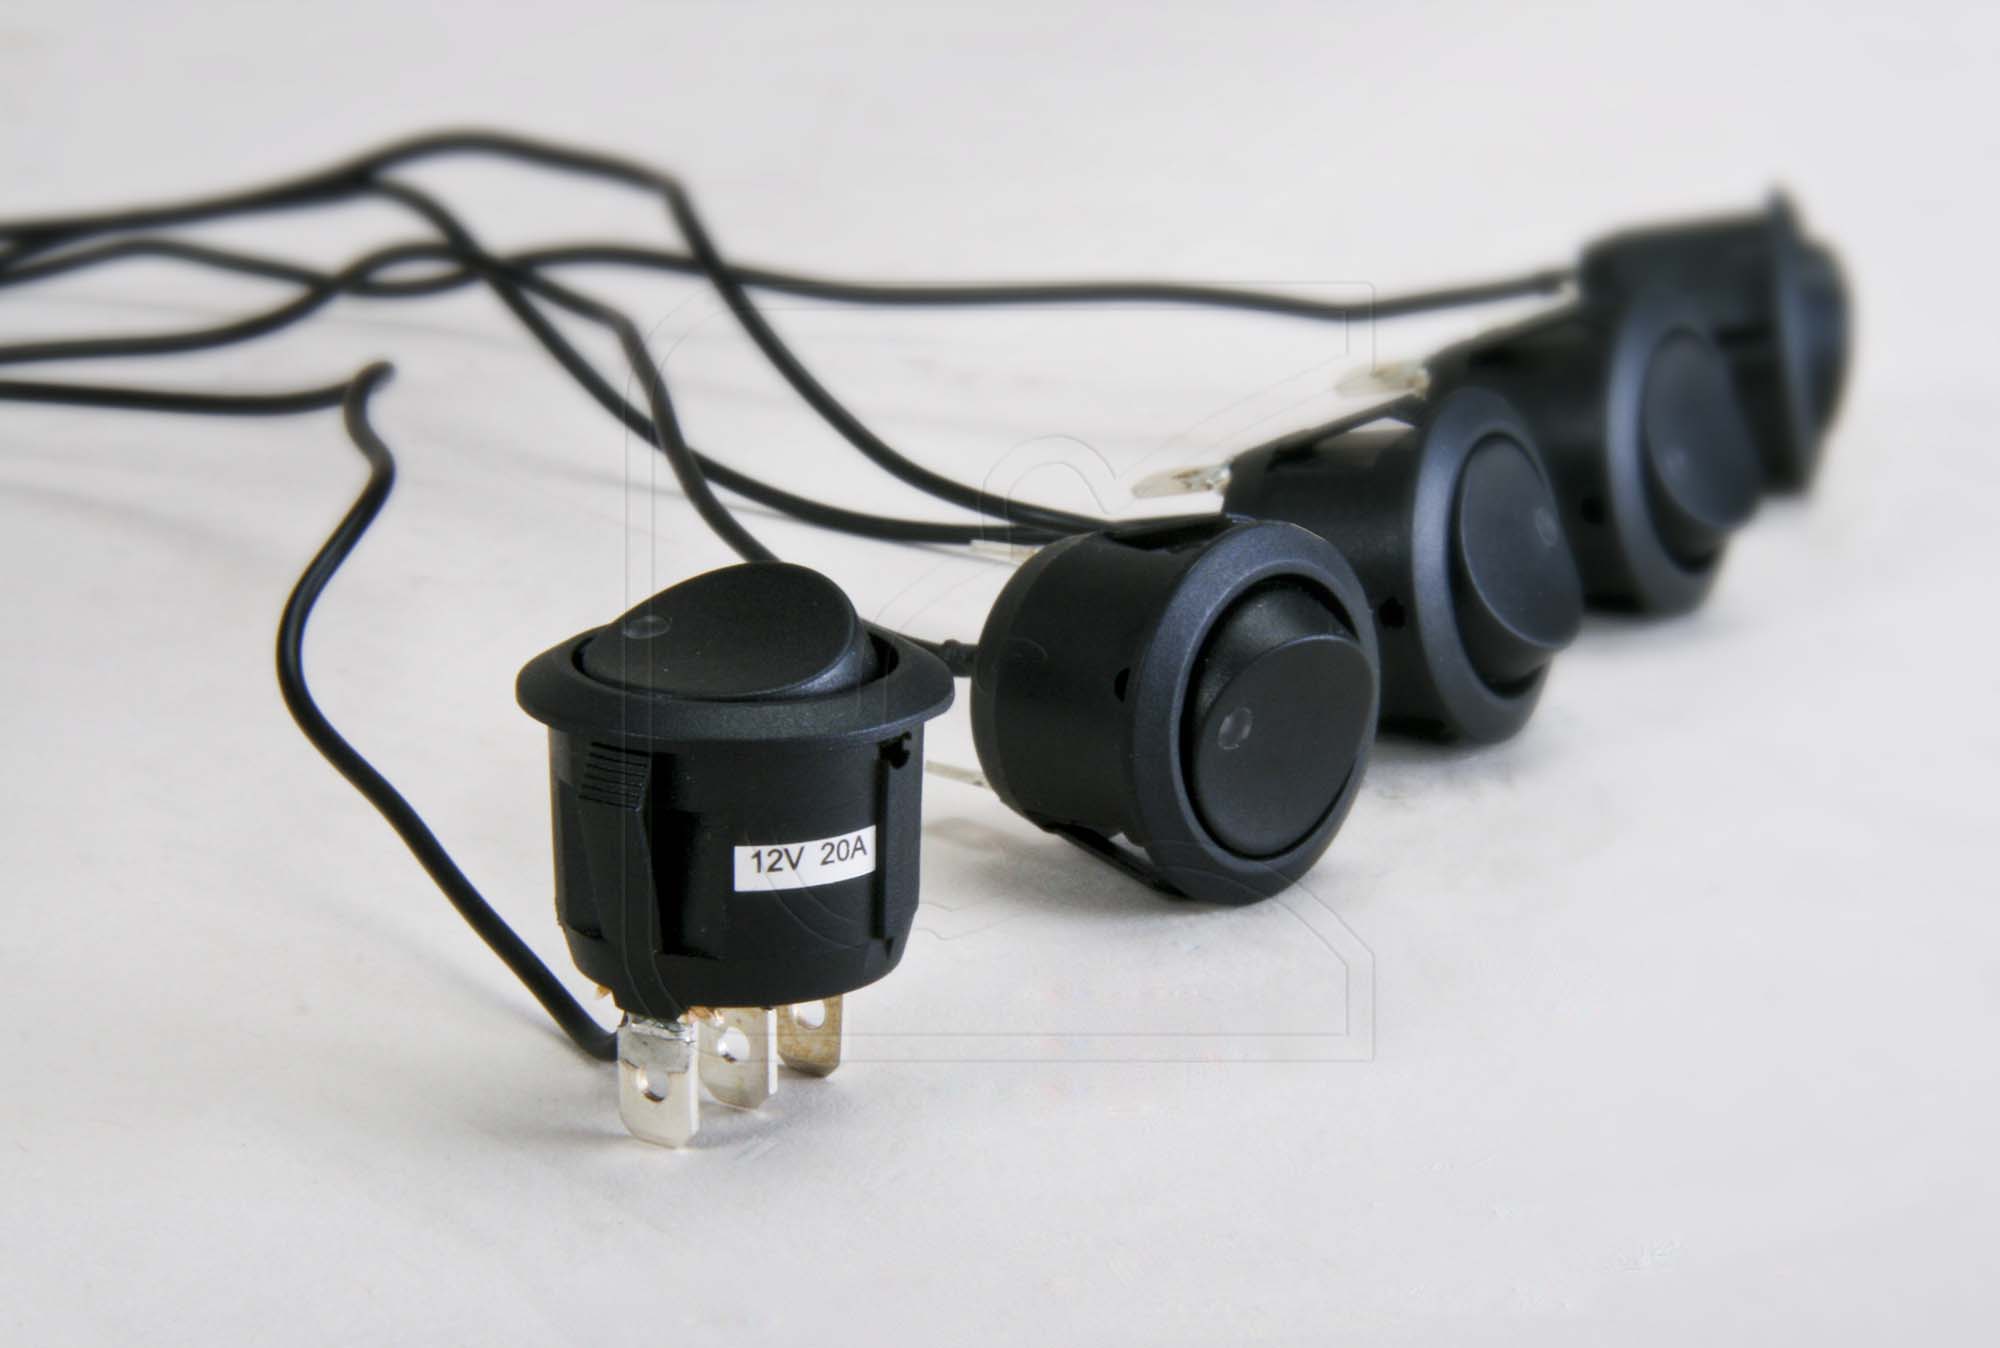 12V Adapter Kabel mit Zigarettenanzünder Stecker abgesichert - ram